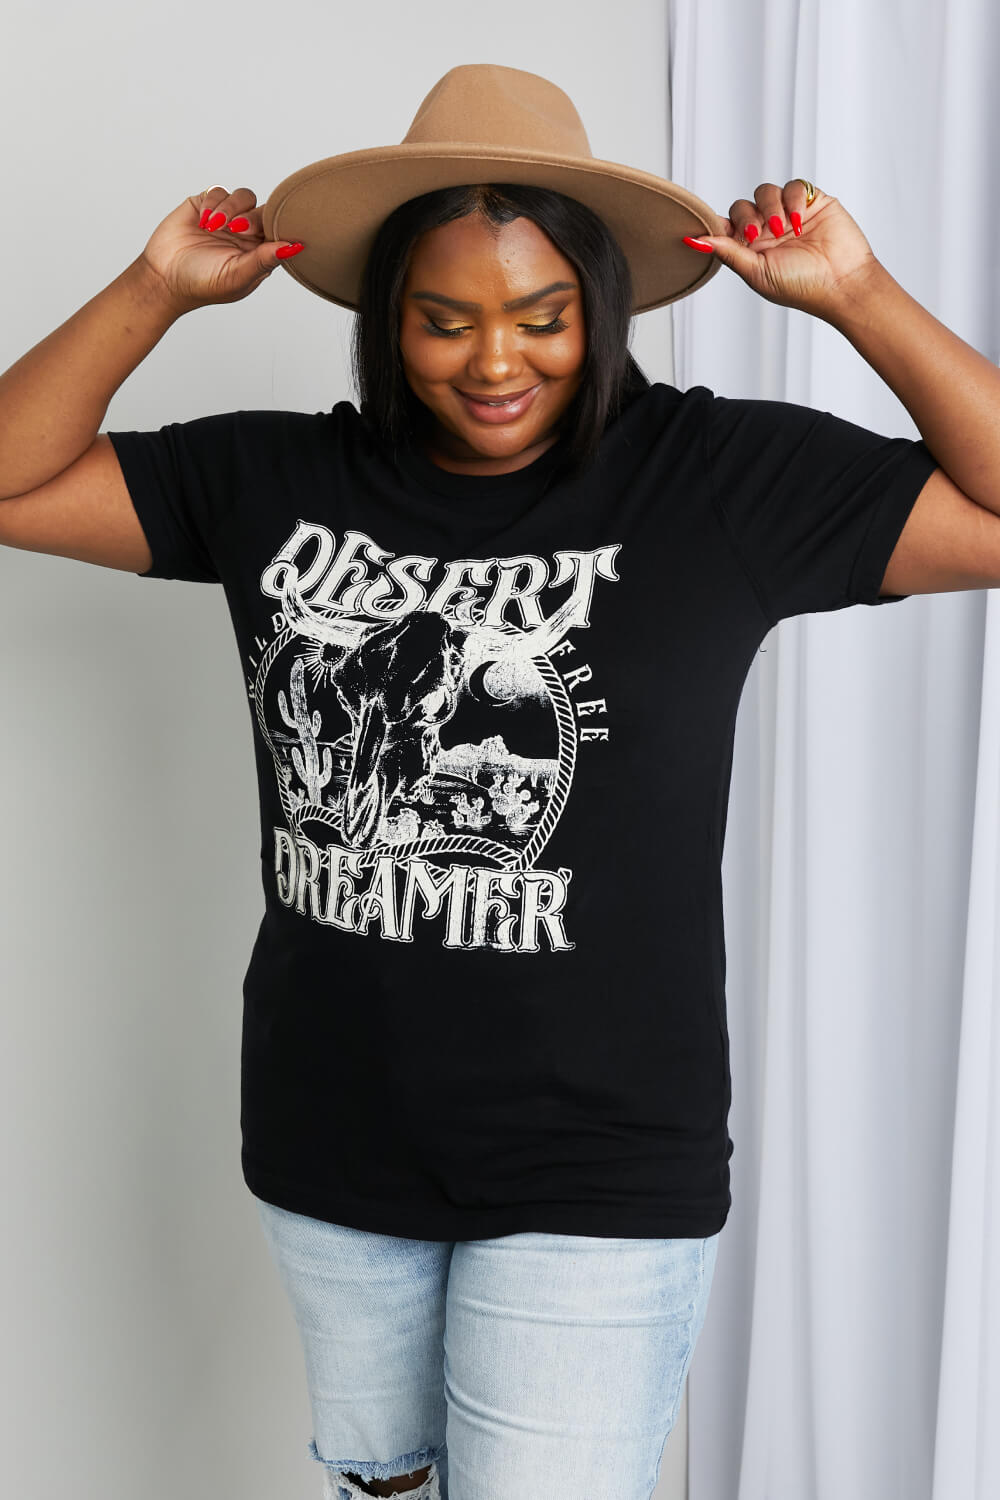 mineB's Desert Dreamer Graphic Print Women's T-Shirt OniTakai